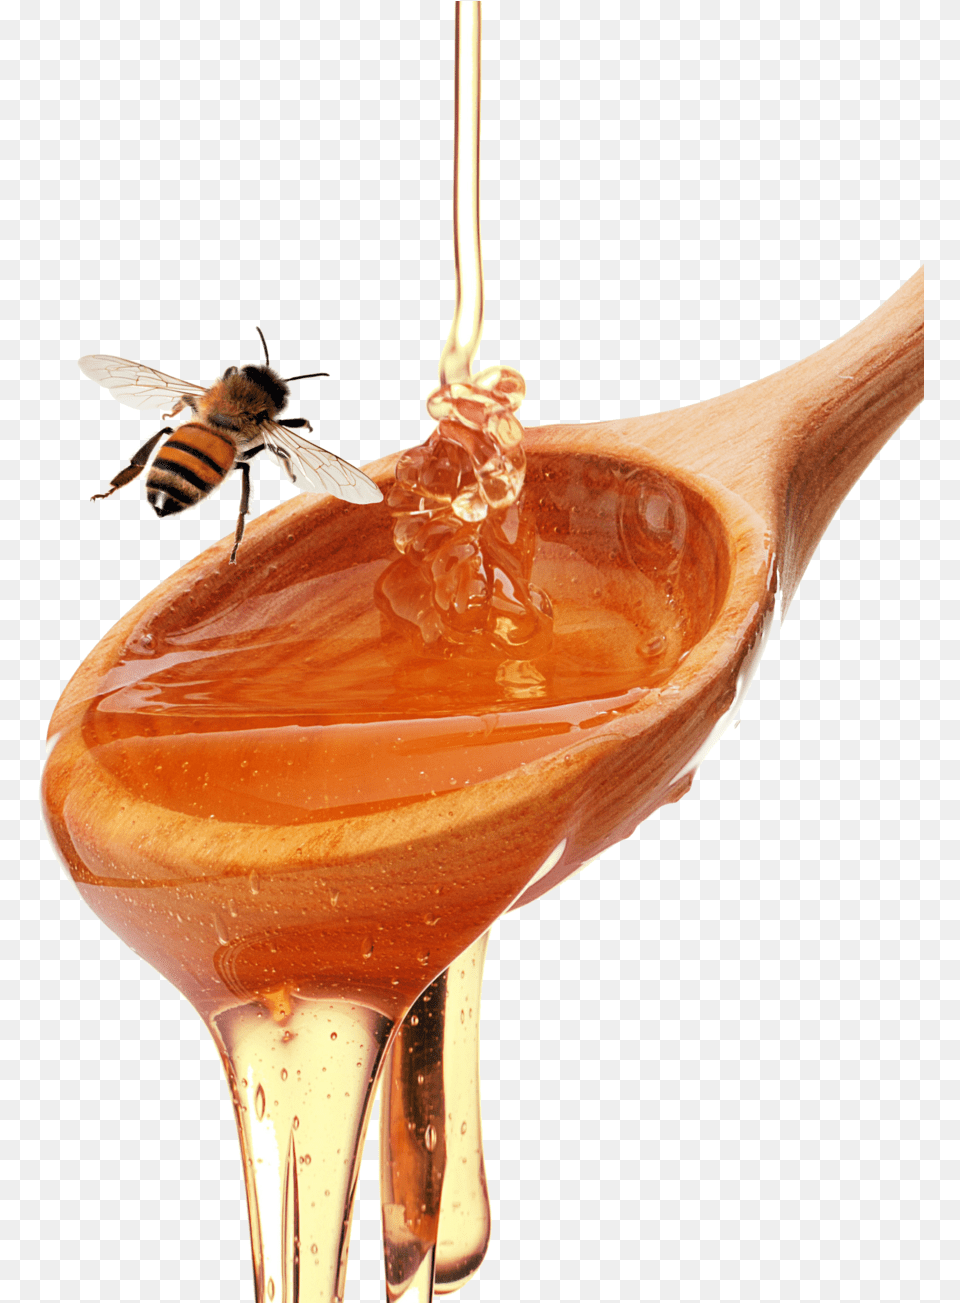 Honey Spoon Honeybee Honey Spoon, Food, Animal, Bee, Cutlery Free Transparent Png